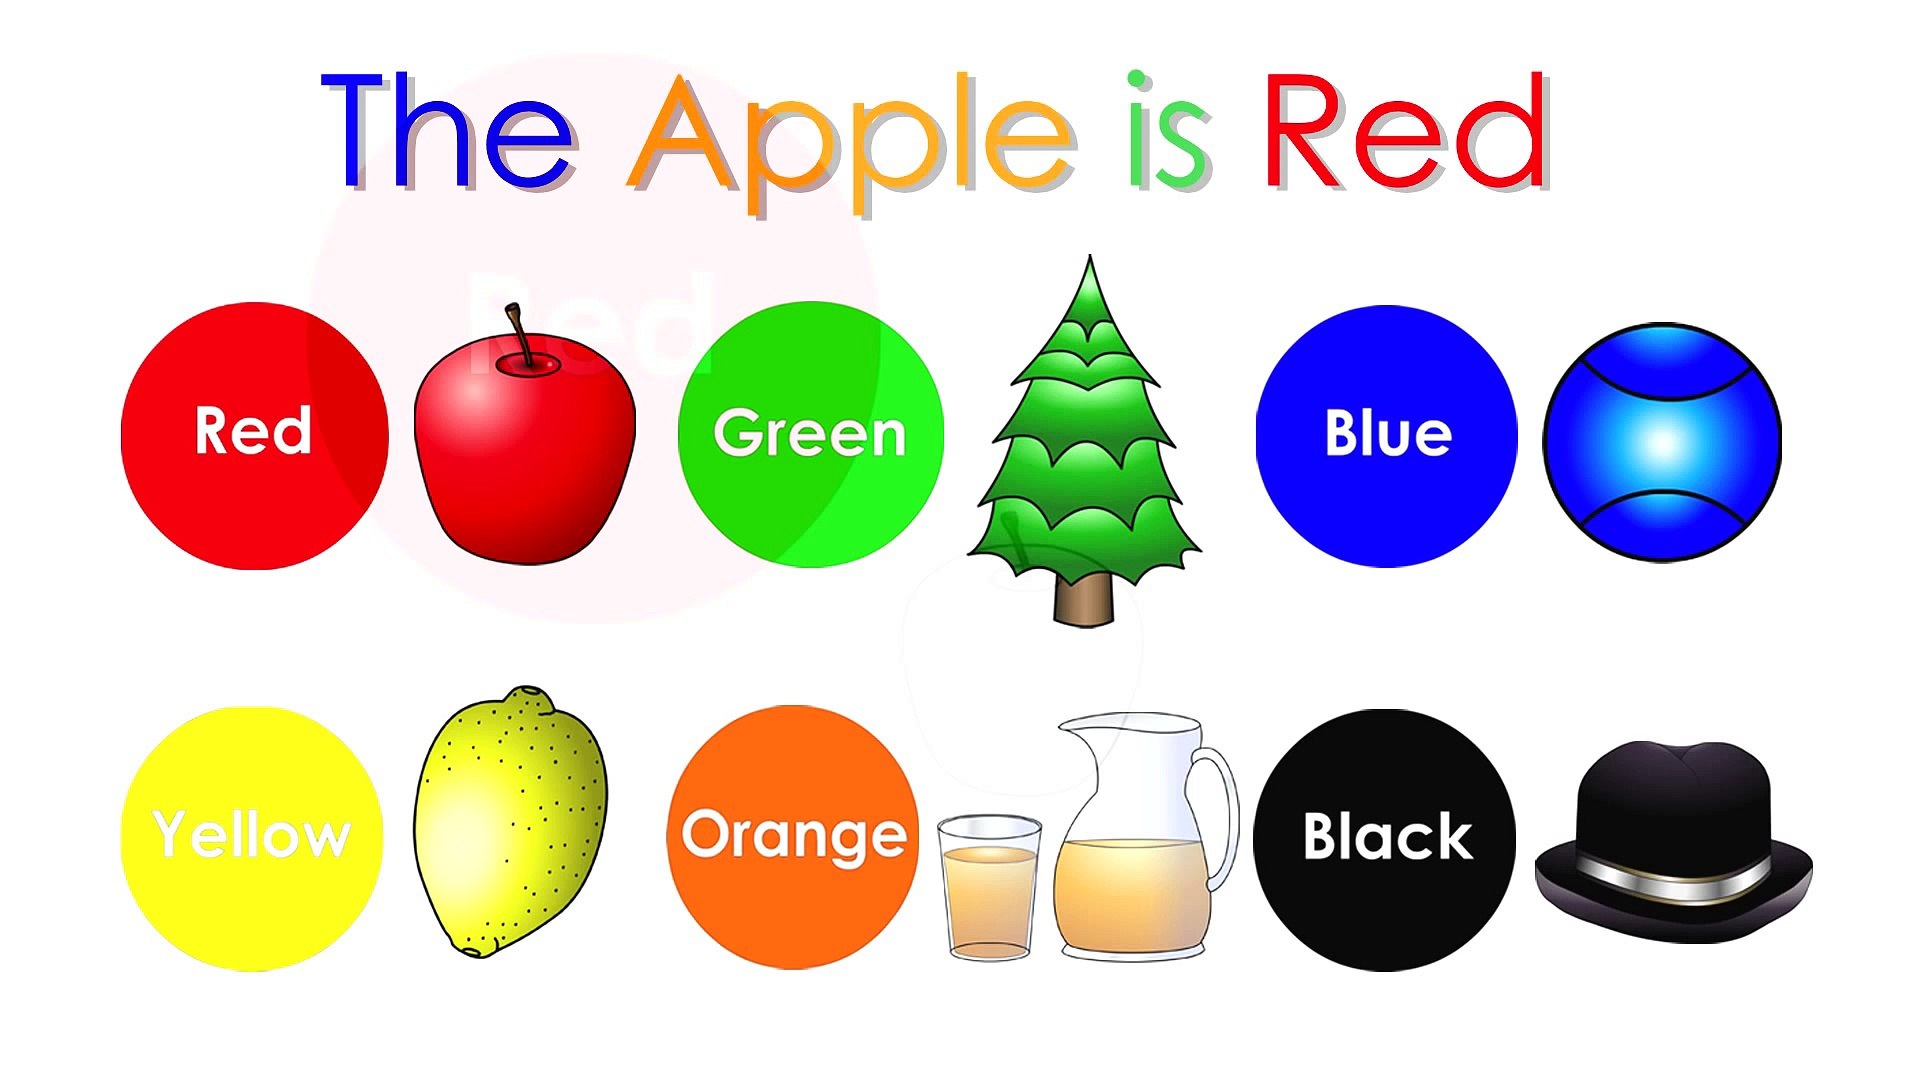 The apple am little. Цвета на английском для детей. Учить цвета на английском для детей. Английские для детей Учим свет. Цвета по английскому для детей.